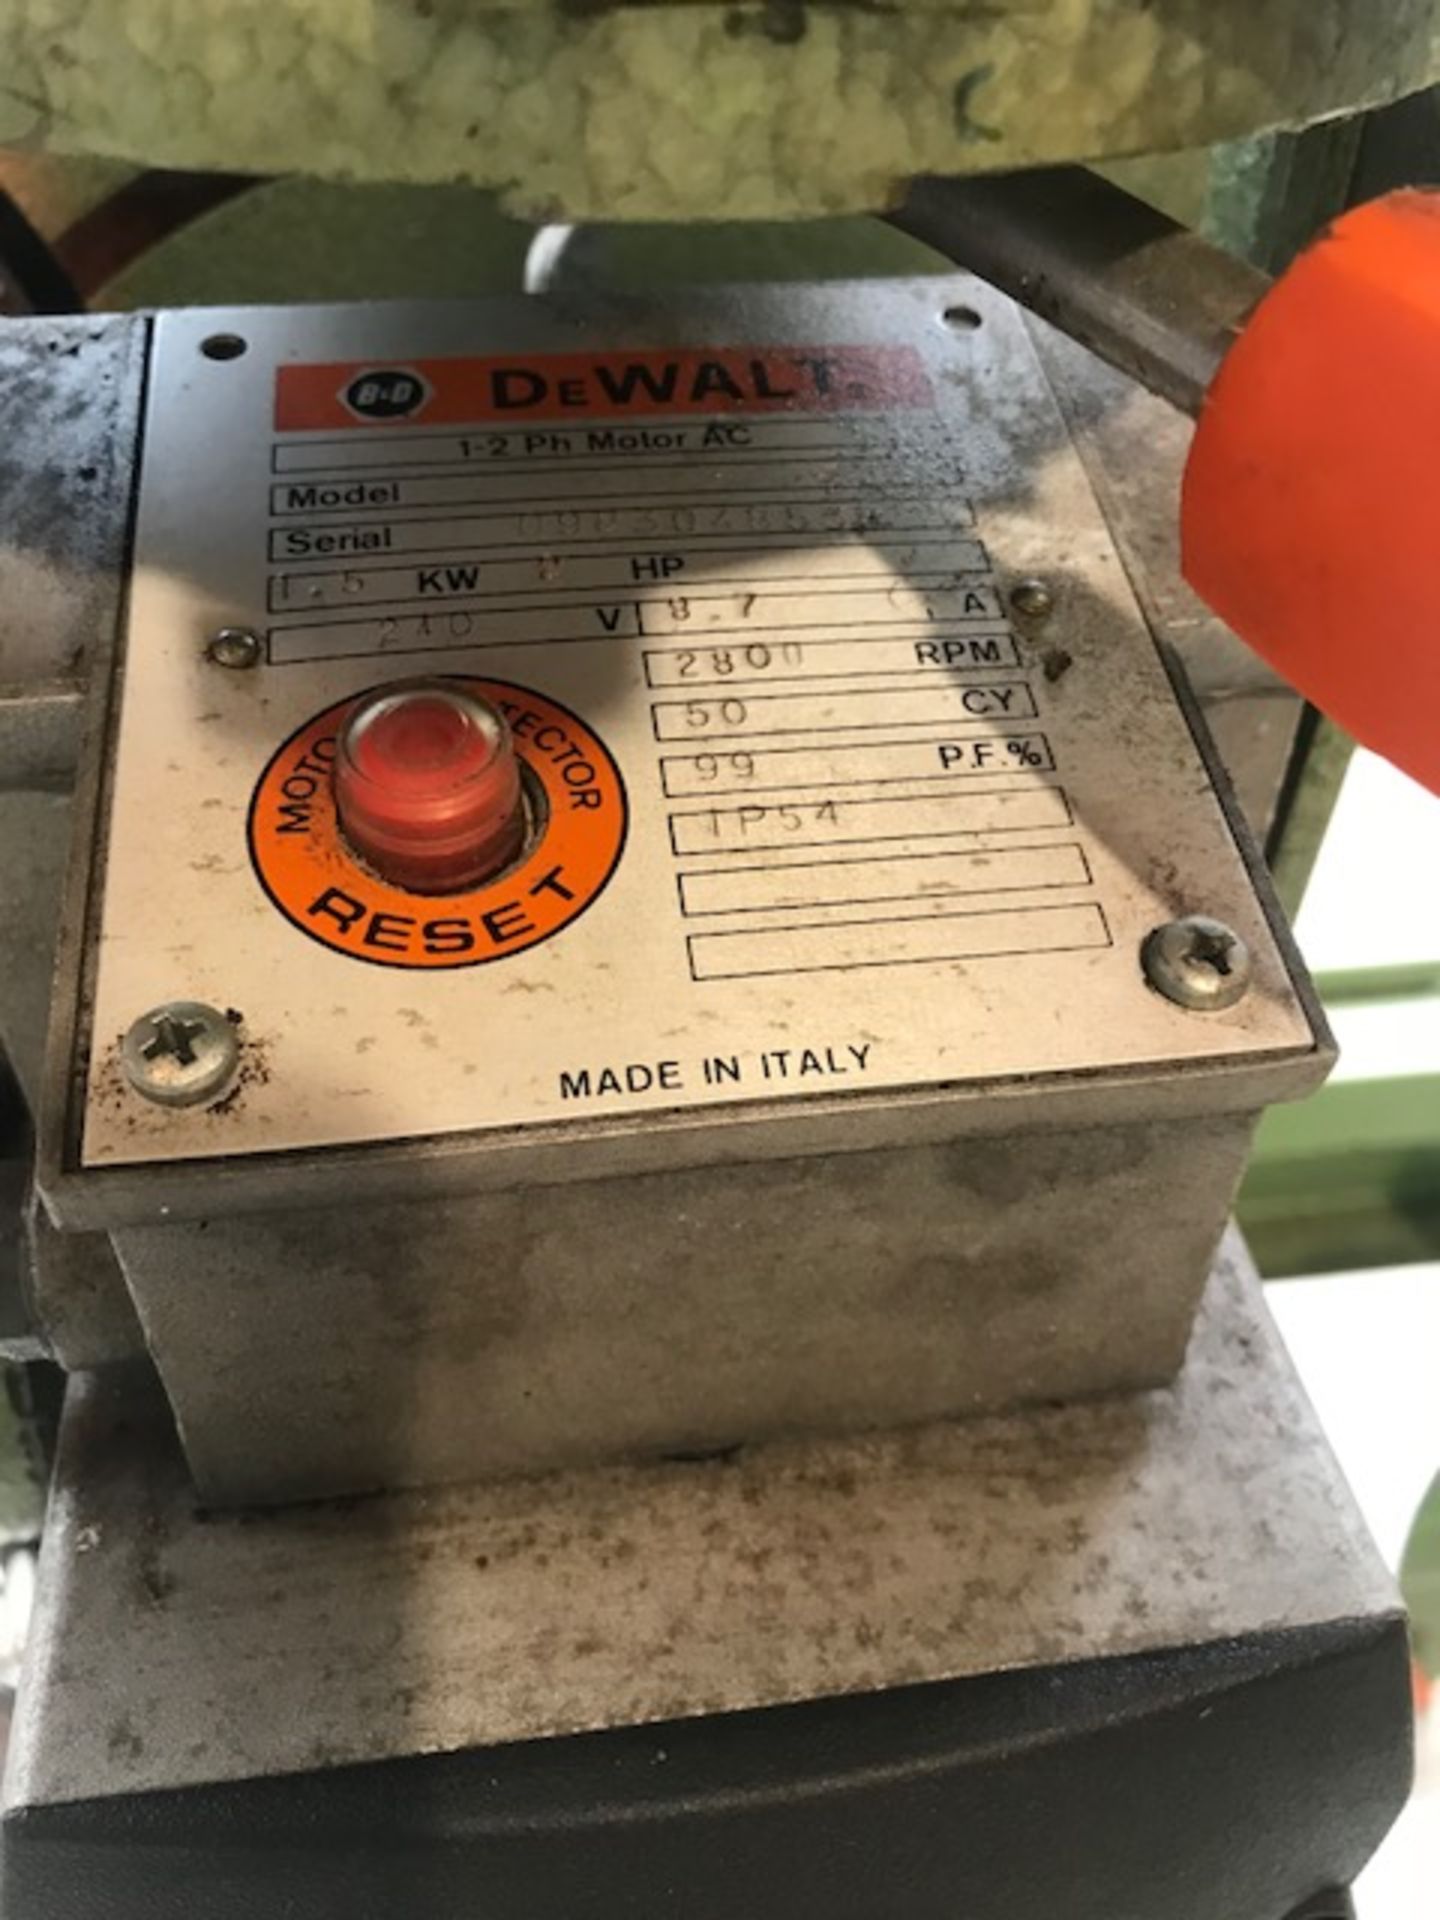 DeWalt 1370 Radial Arm Saw, 240V - Bild 2 aus 3